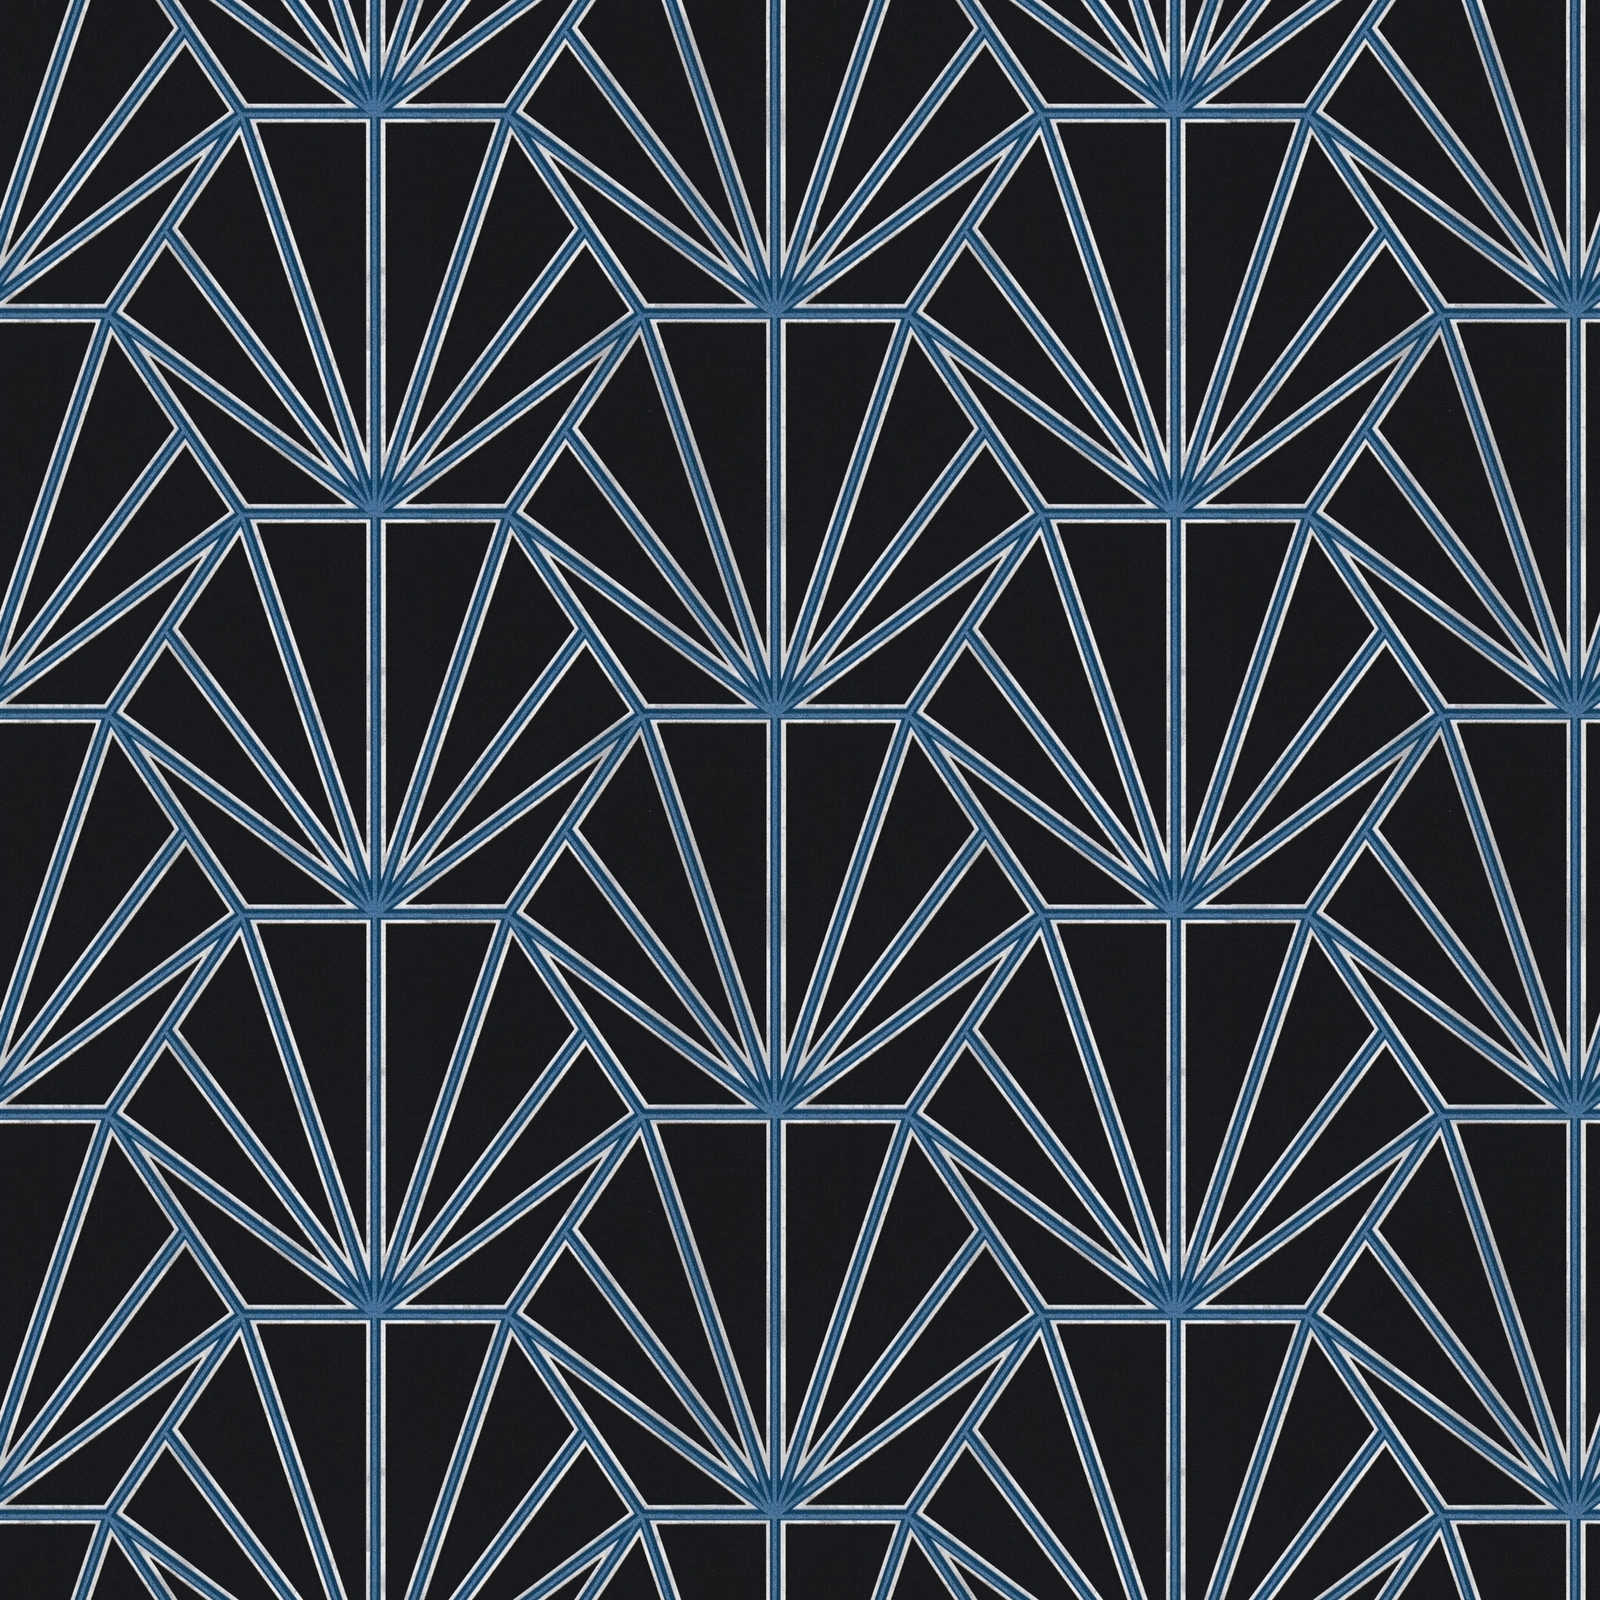 Art deco behang met retro patroon - zwart, blauw, wit
